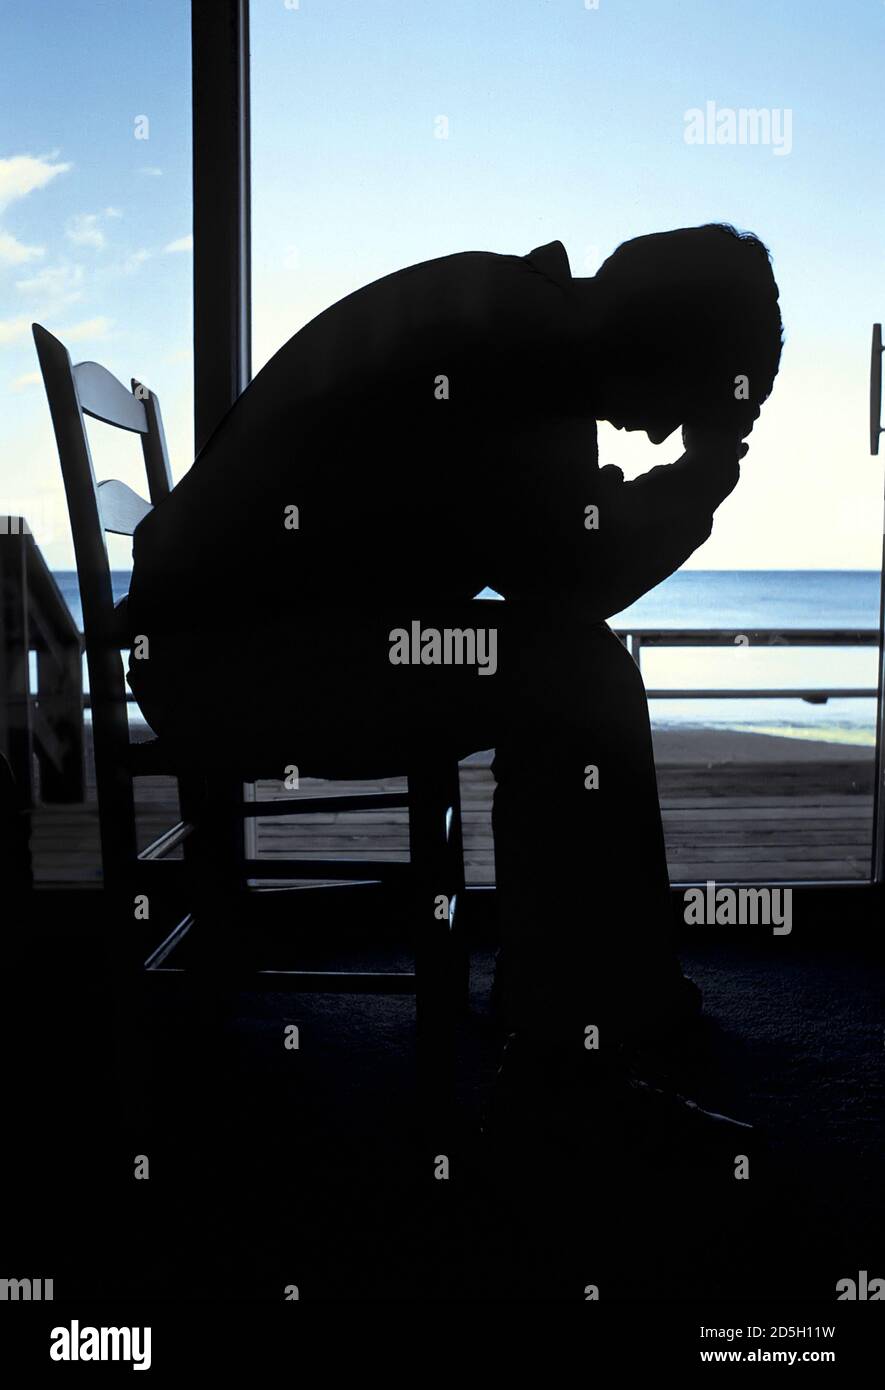 Silhouette eines erwachsenen Mannes sitzt in einem Stuhl mit Kopf in Hand in tiefe Depression comtemplating Selbstmord Stockfoto